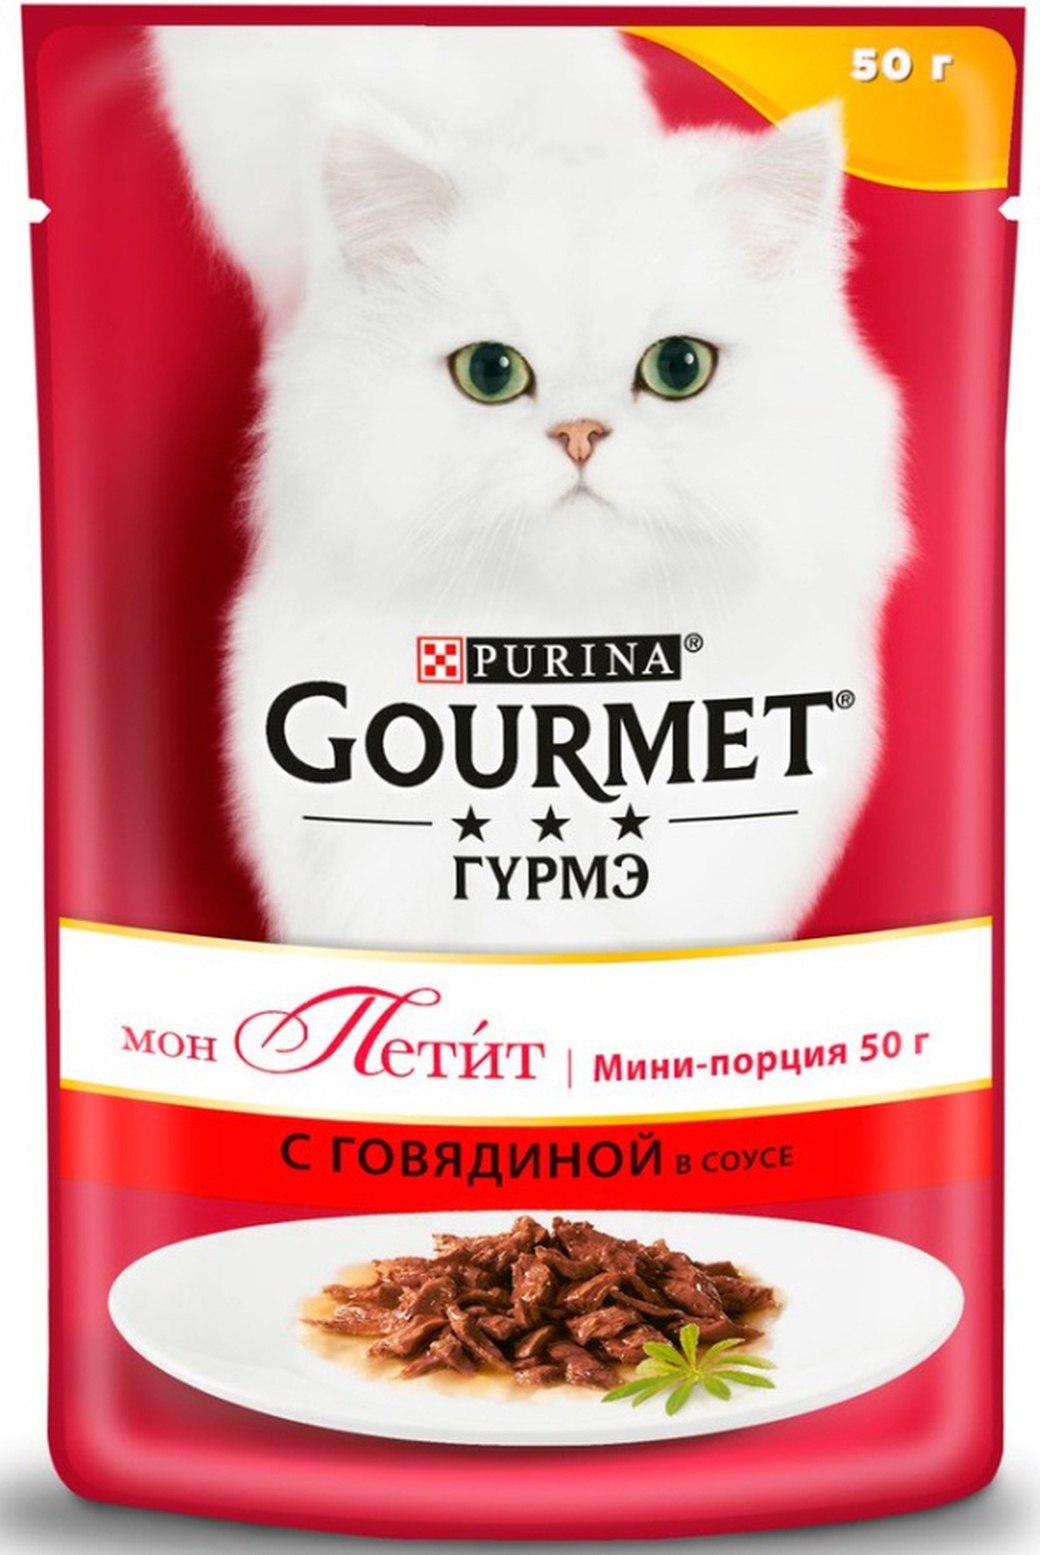 Консервы для кошек Gourmet Mon Petit, кусочки в соусе с говядиной, 50г*30 шт. фото